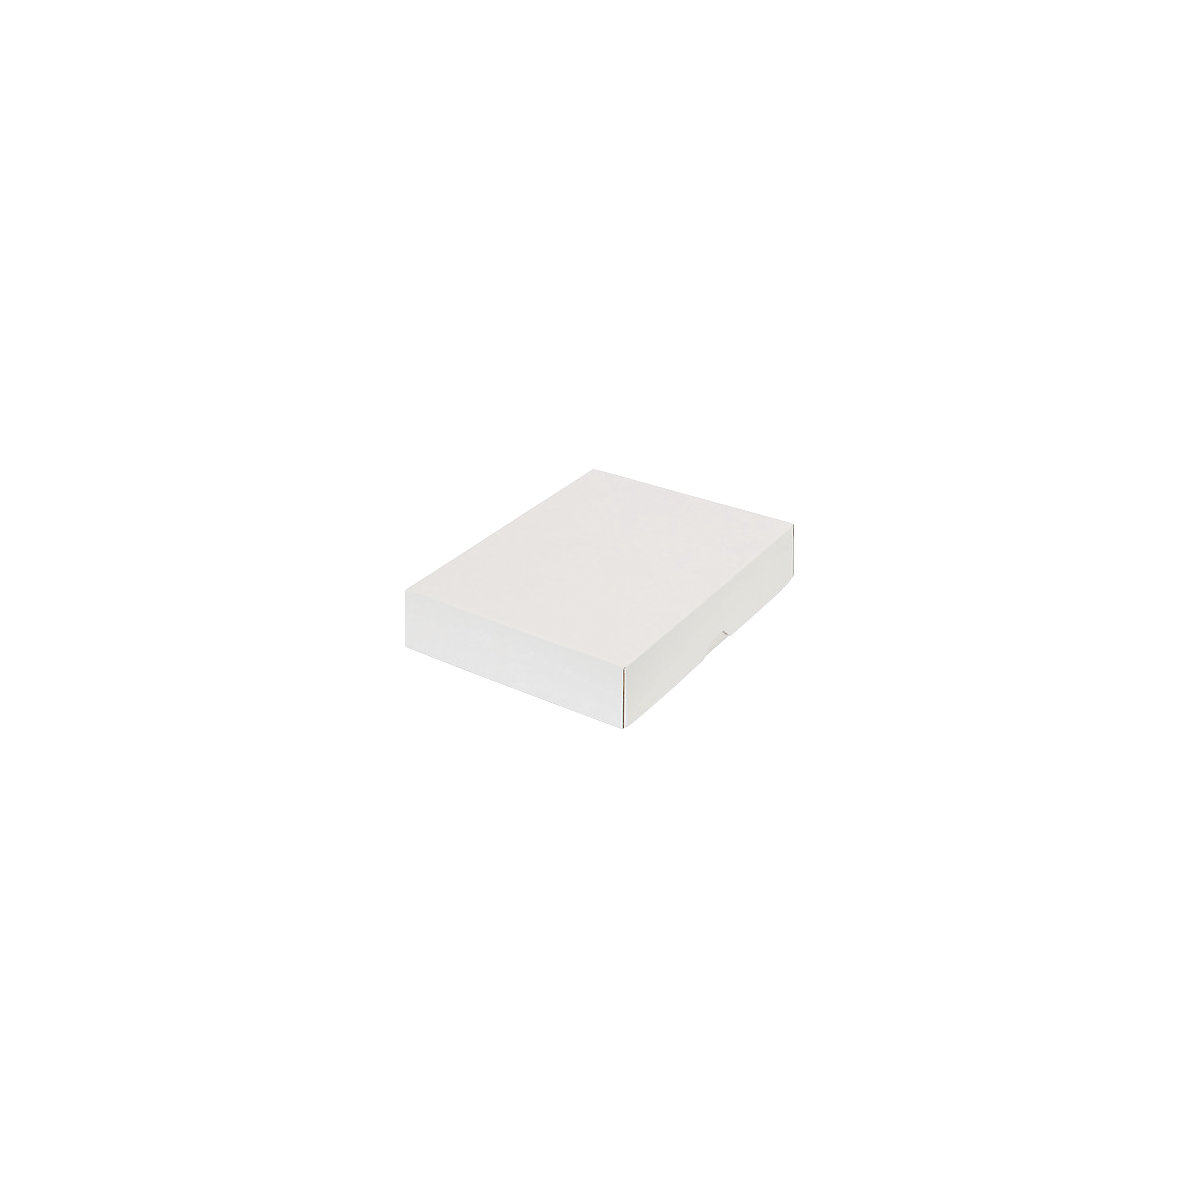 Stülpdeckelkarton, zweiteilig, Innenmaße 252 x 180 x 45 mm, B5, weiß, ab 300 Stk-43